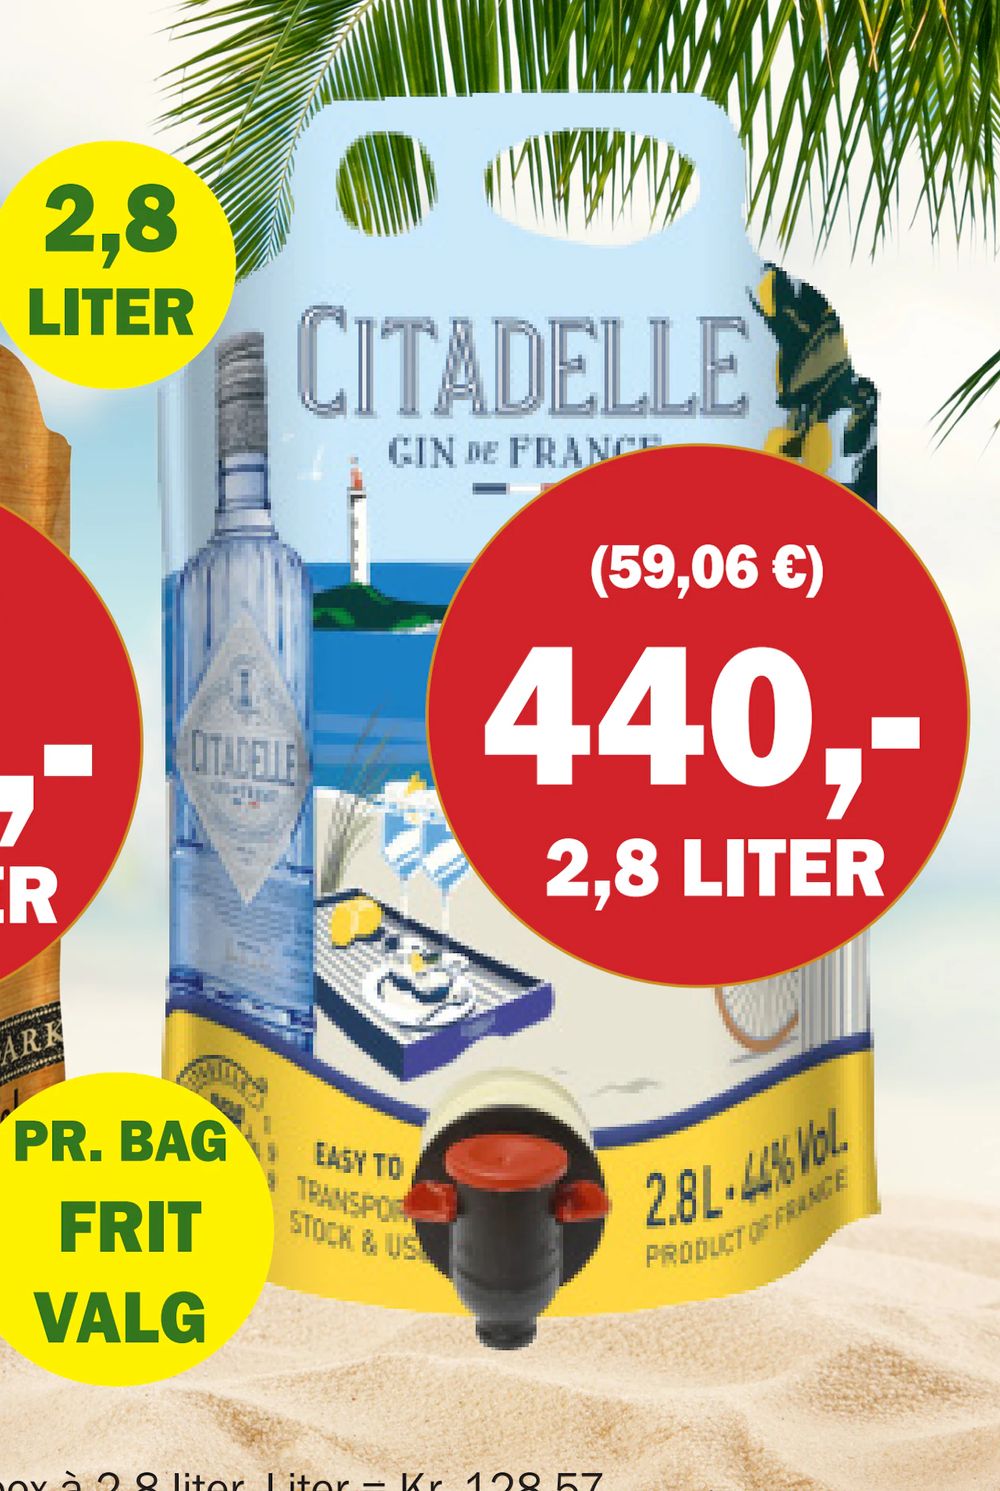 Tilbud på Citadelle Gin fra Købmandsgården til 440 kr.